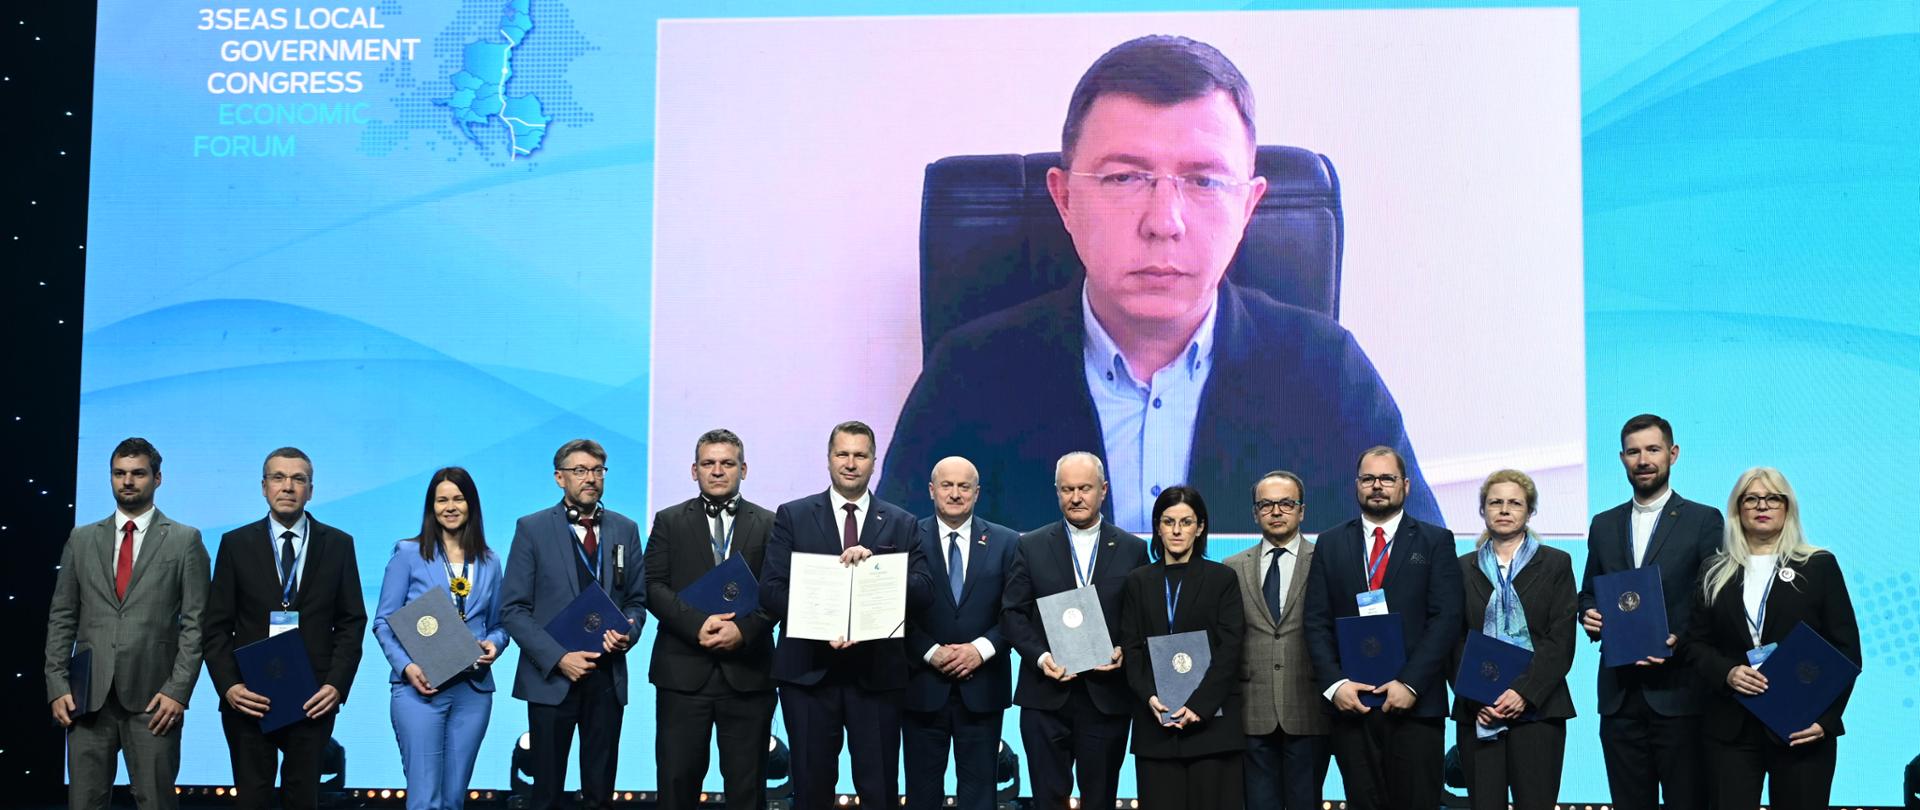 Na tle wielkiego niebieskiego ekranu na którym widać mężczyznę siedzącego na krześle stoi w szeregu grupa kilkunastu osób, mężczyzna pośrodku pokazuje otwarty dokument.